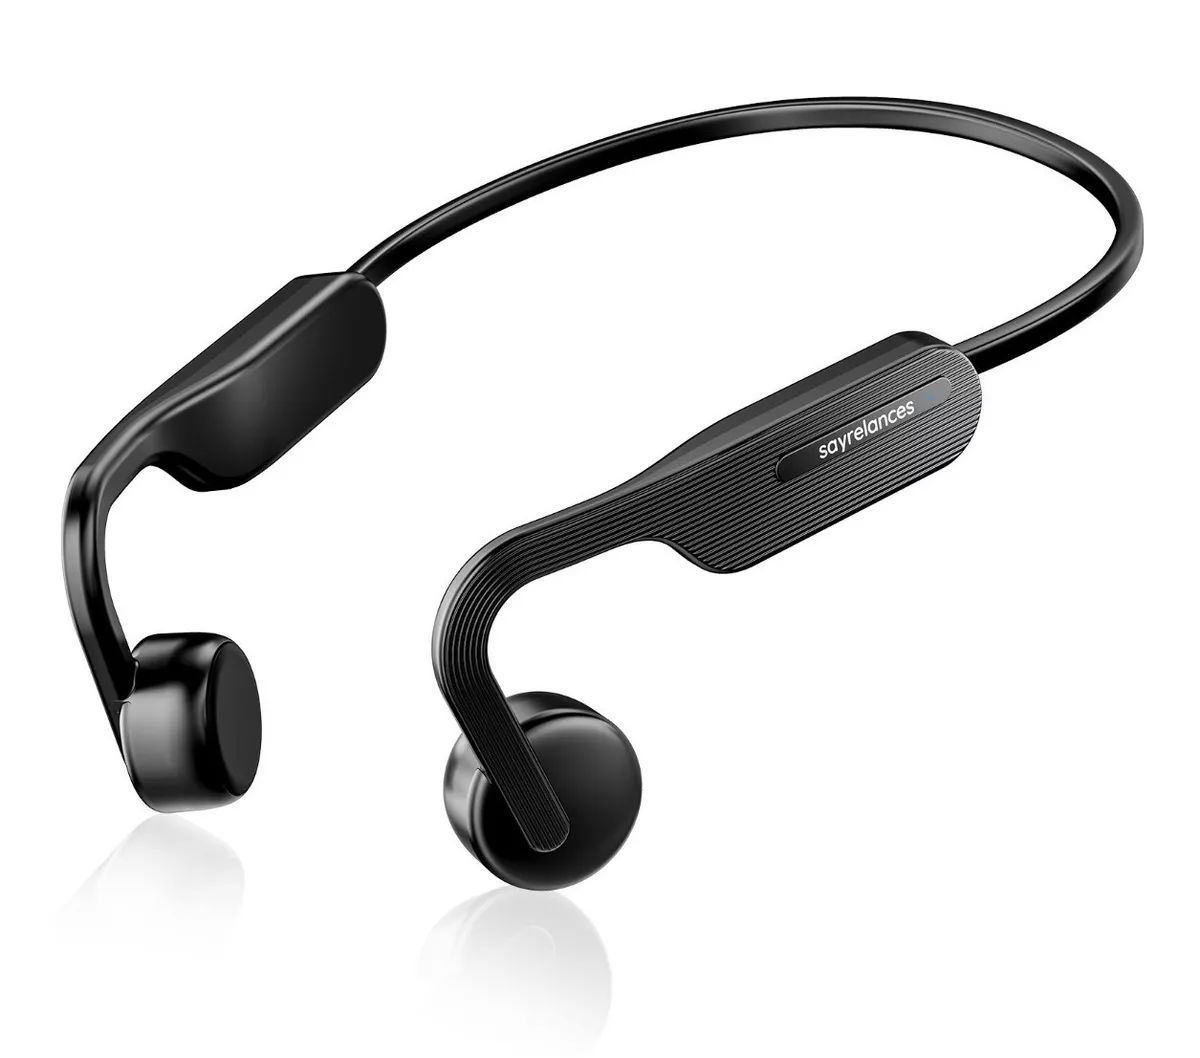 Ambie-auriculares TWS inalámbricos con Bluetooth, cascos deportivos con  conducción ósea, no aumenta a 1:1, color negro - AliExpress